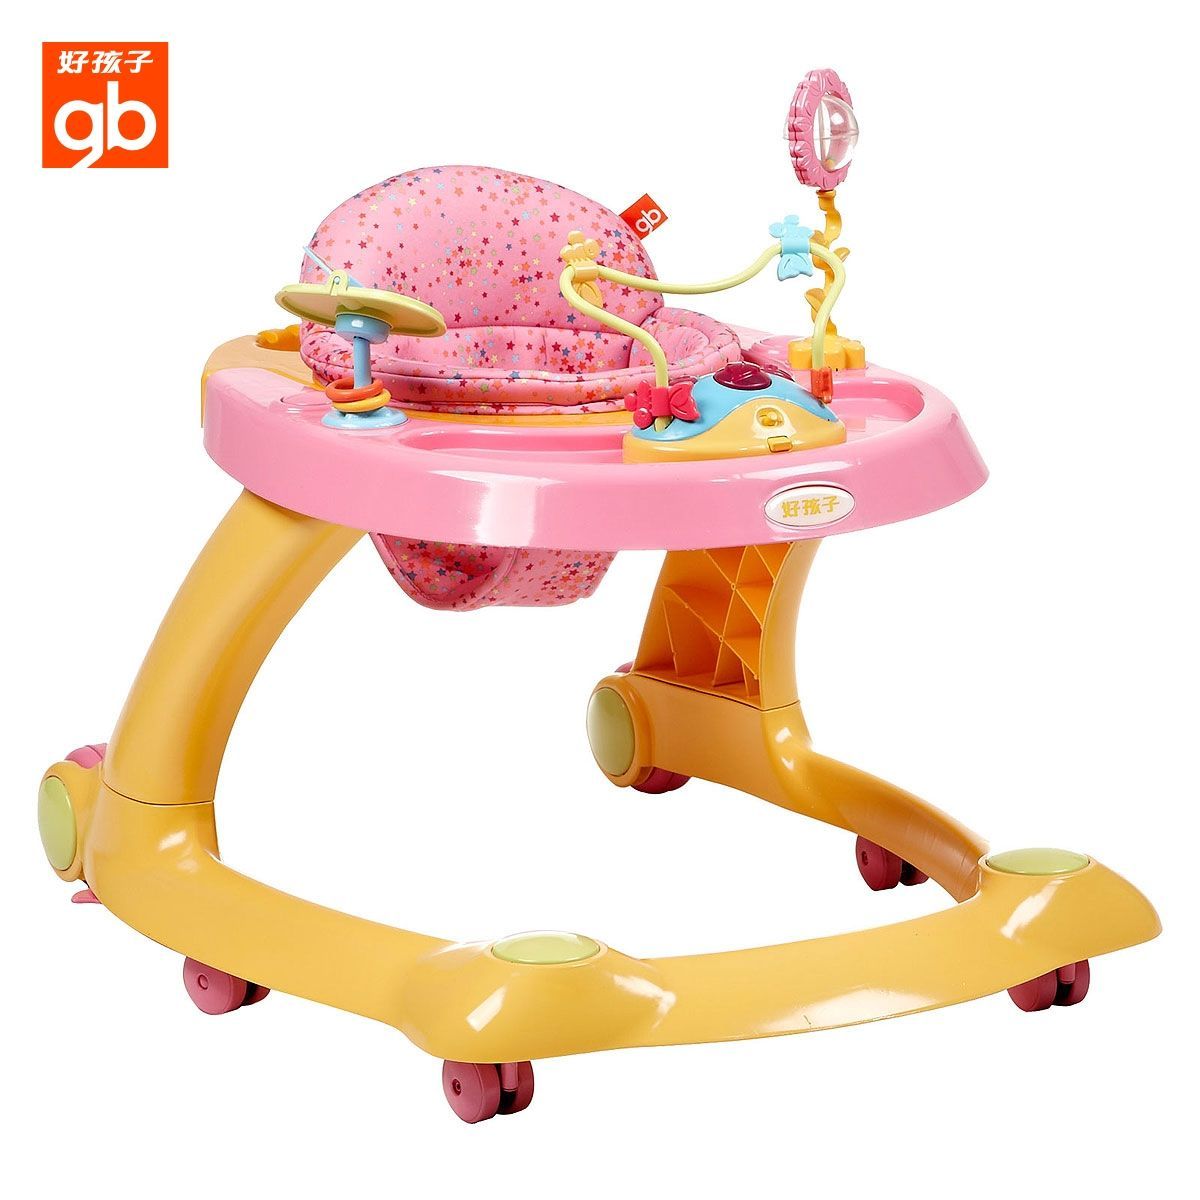 Goodbaby/好孩子婴儿/宝宝/儿童学步车XB606多功能折叠可调节